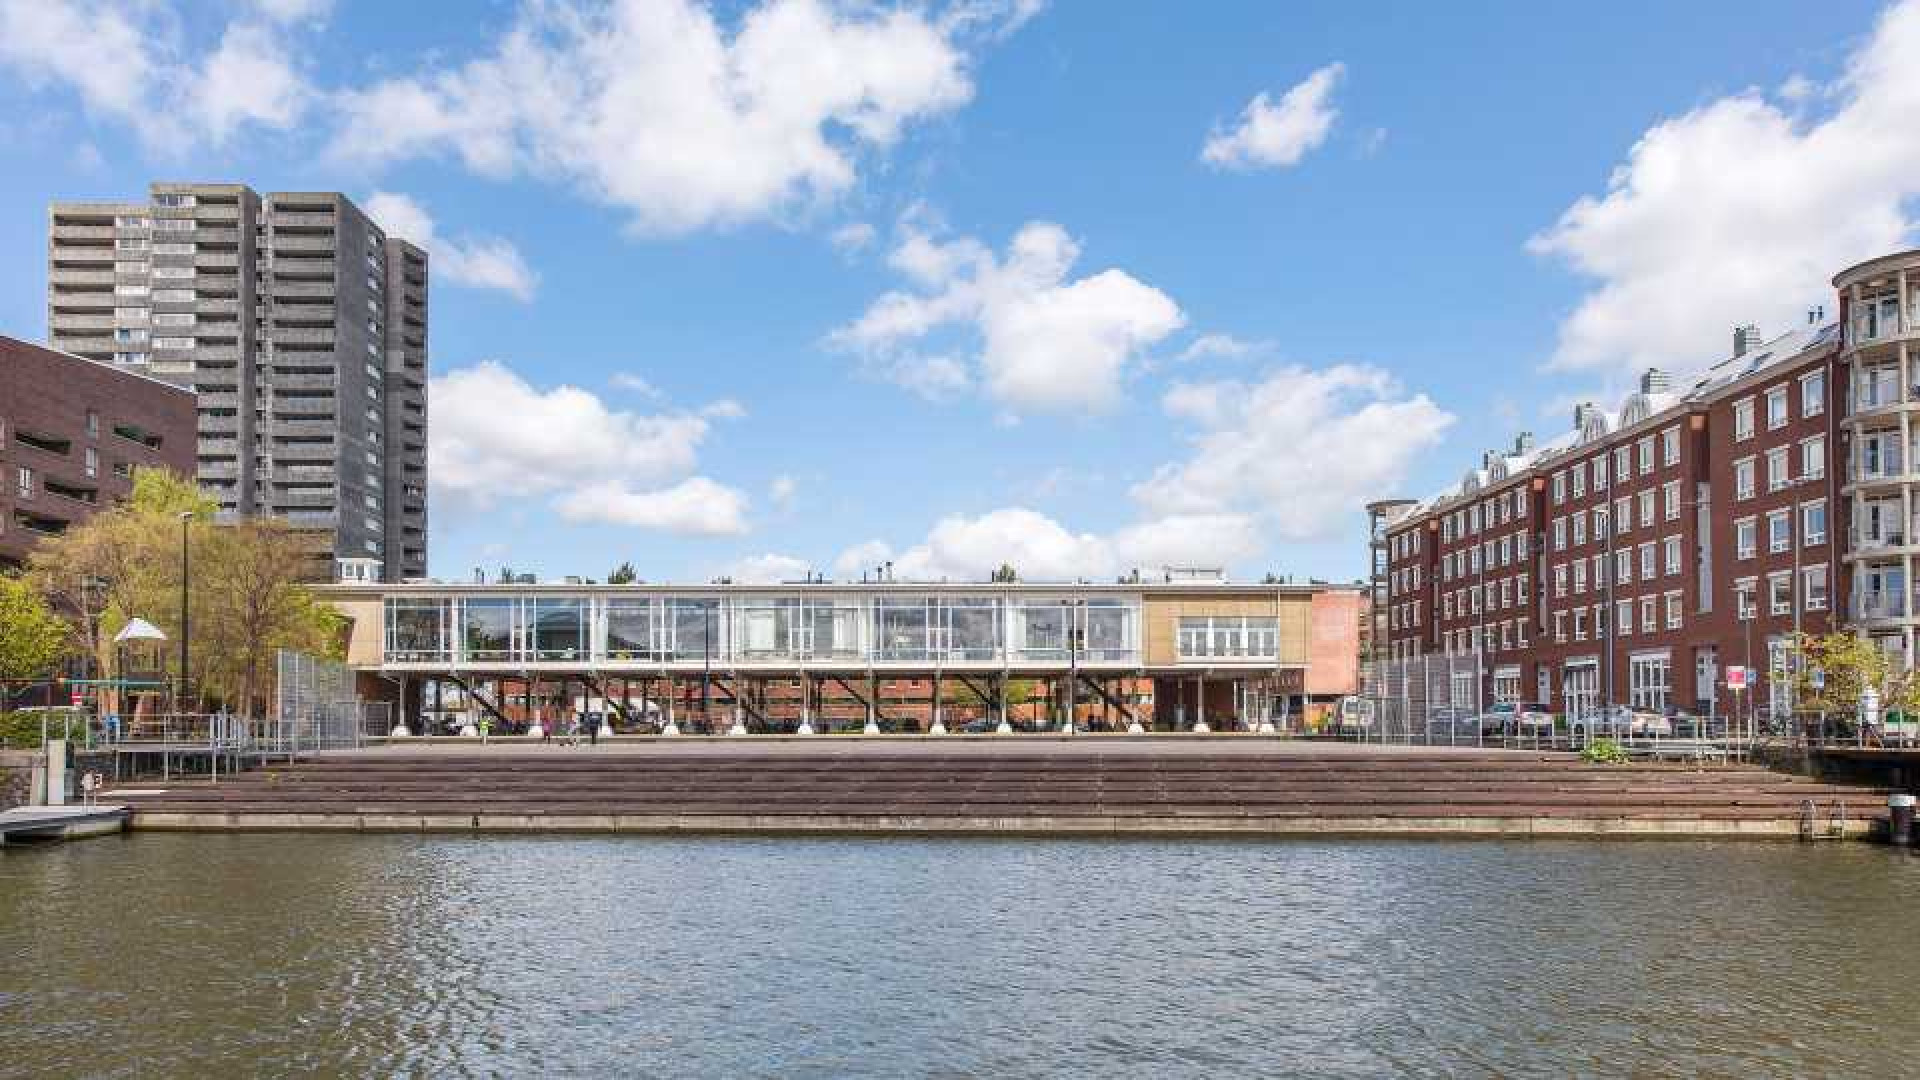 Deze bekende nederlander heeft al zeven jaar zijn Amsterdamse penthouse te koop staan. Zie foto's penthouse 12